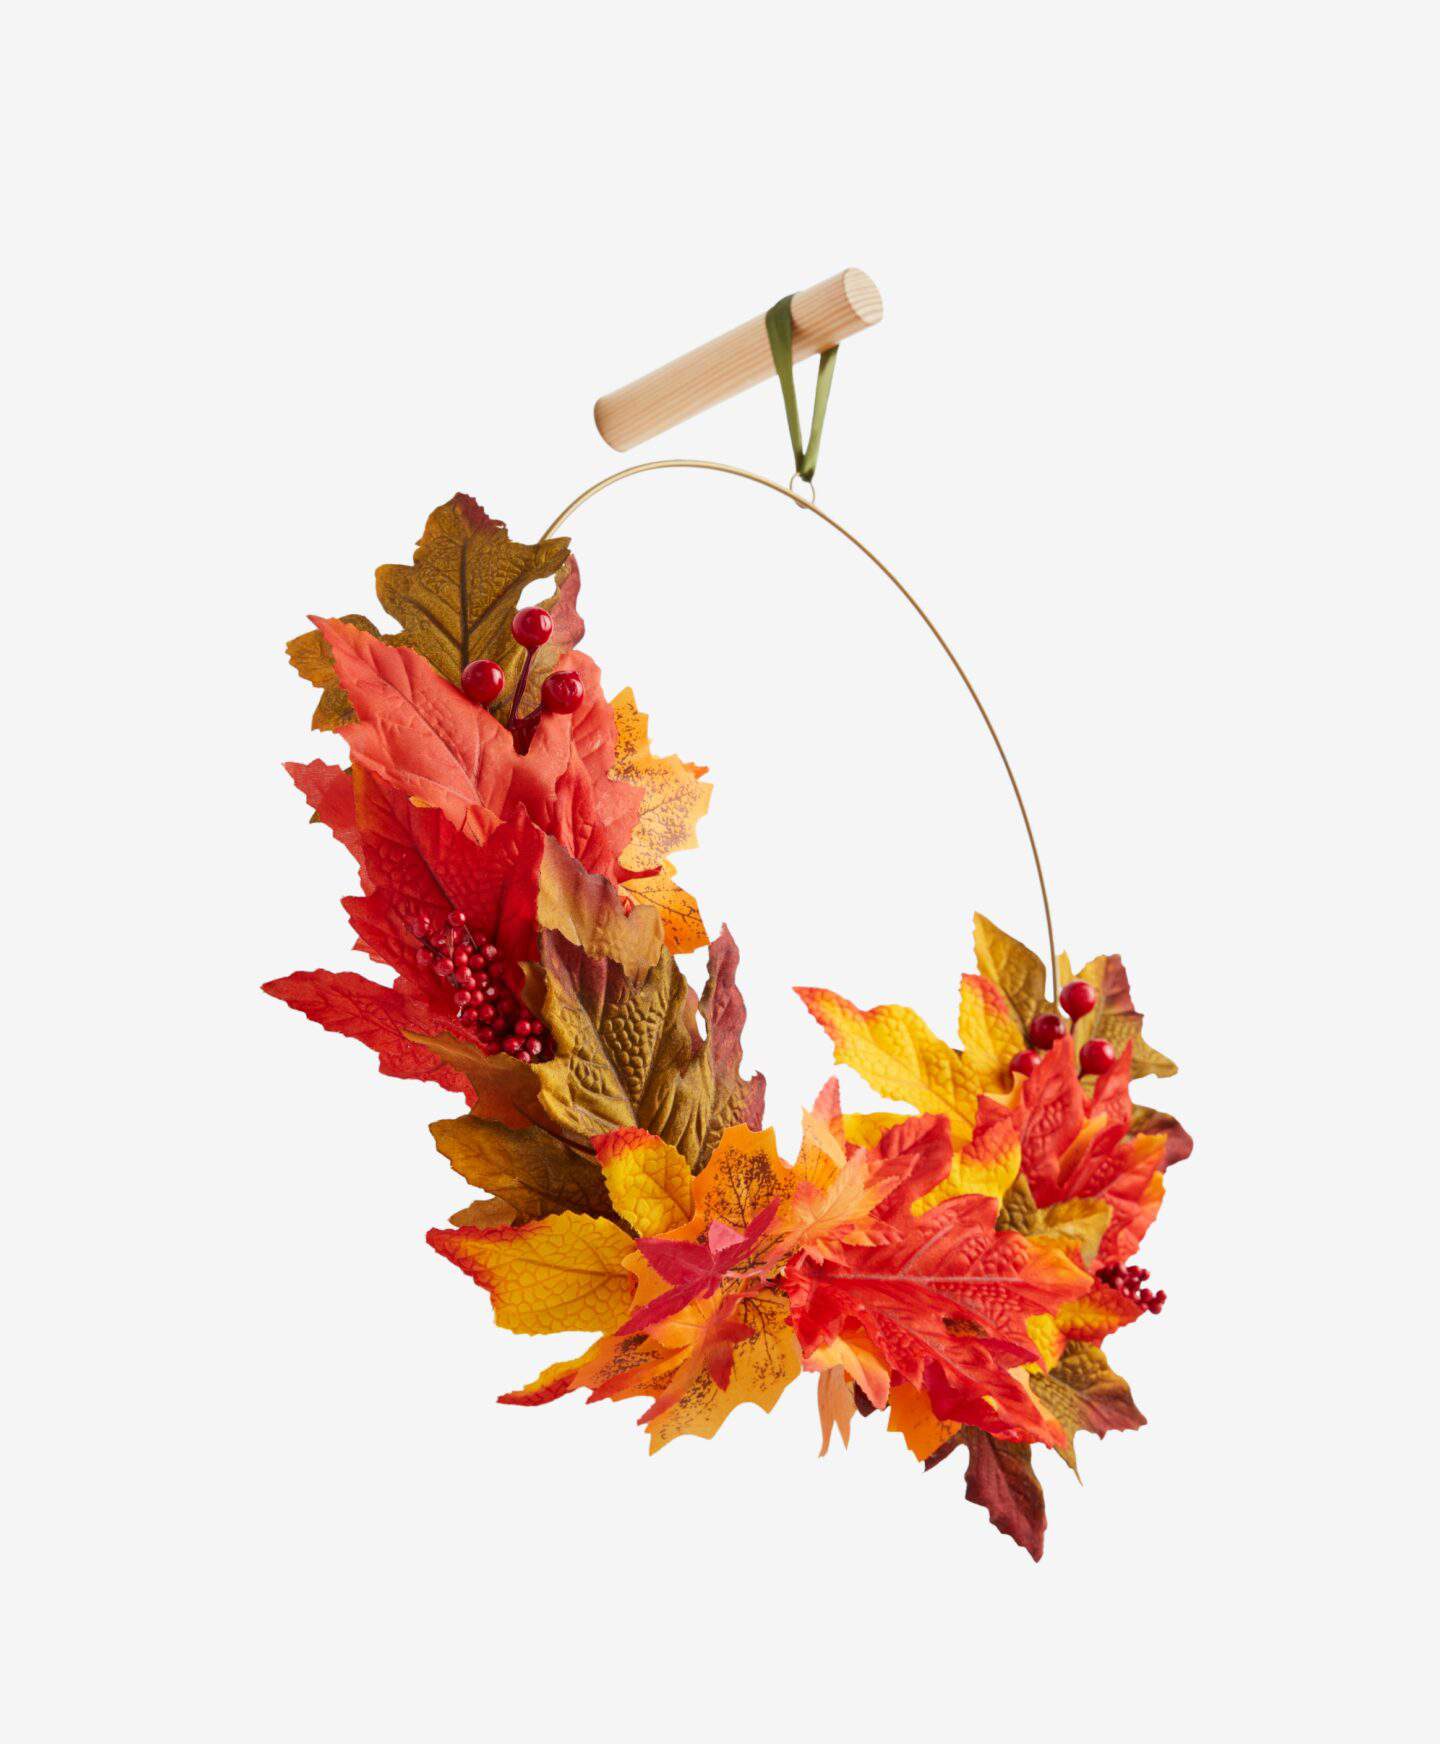 Corona con hojas ocres, rojizas y marrones